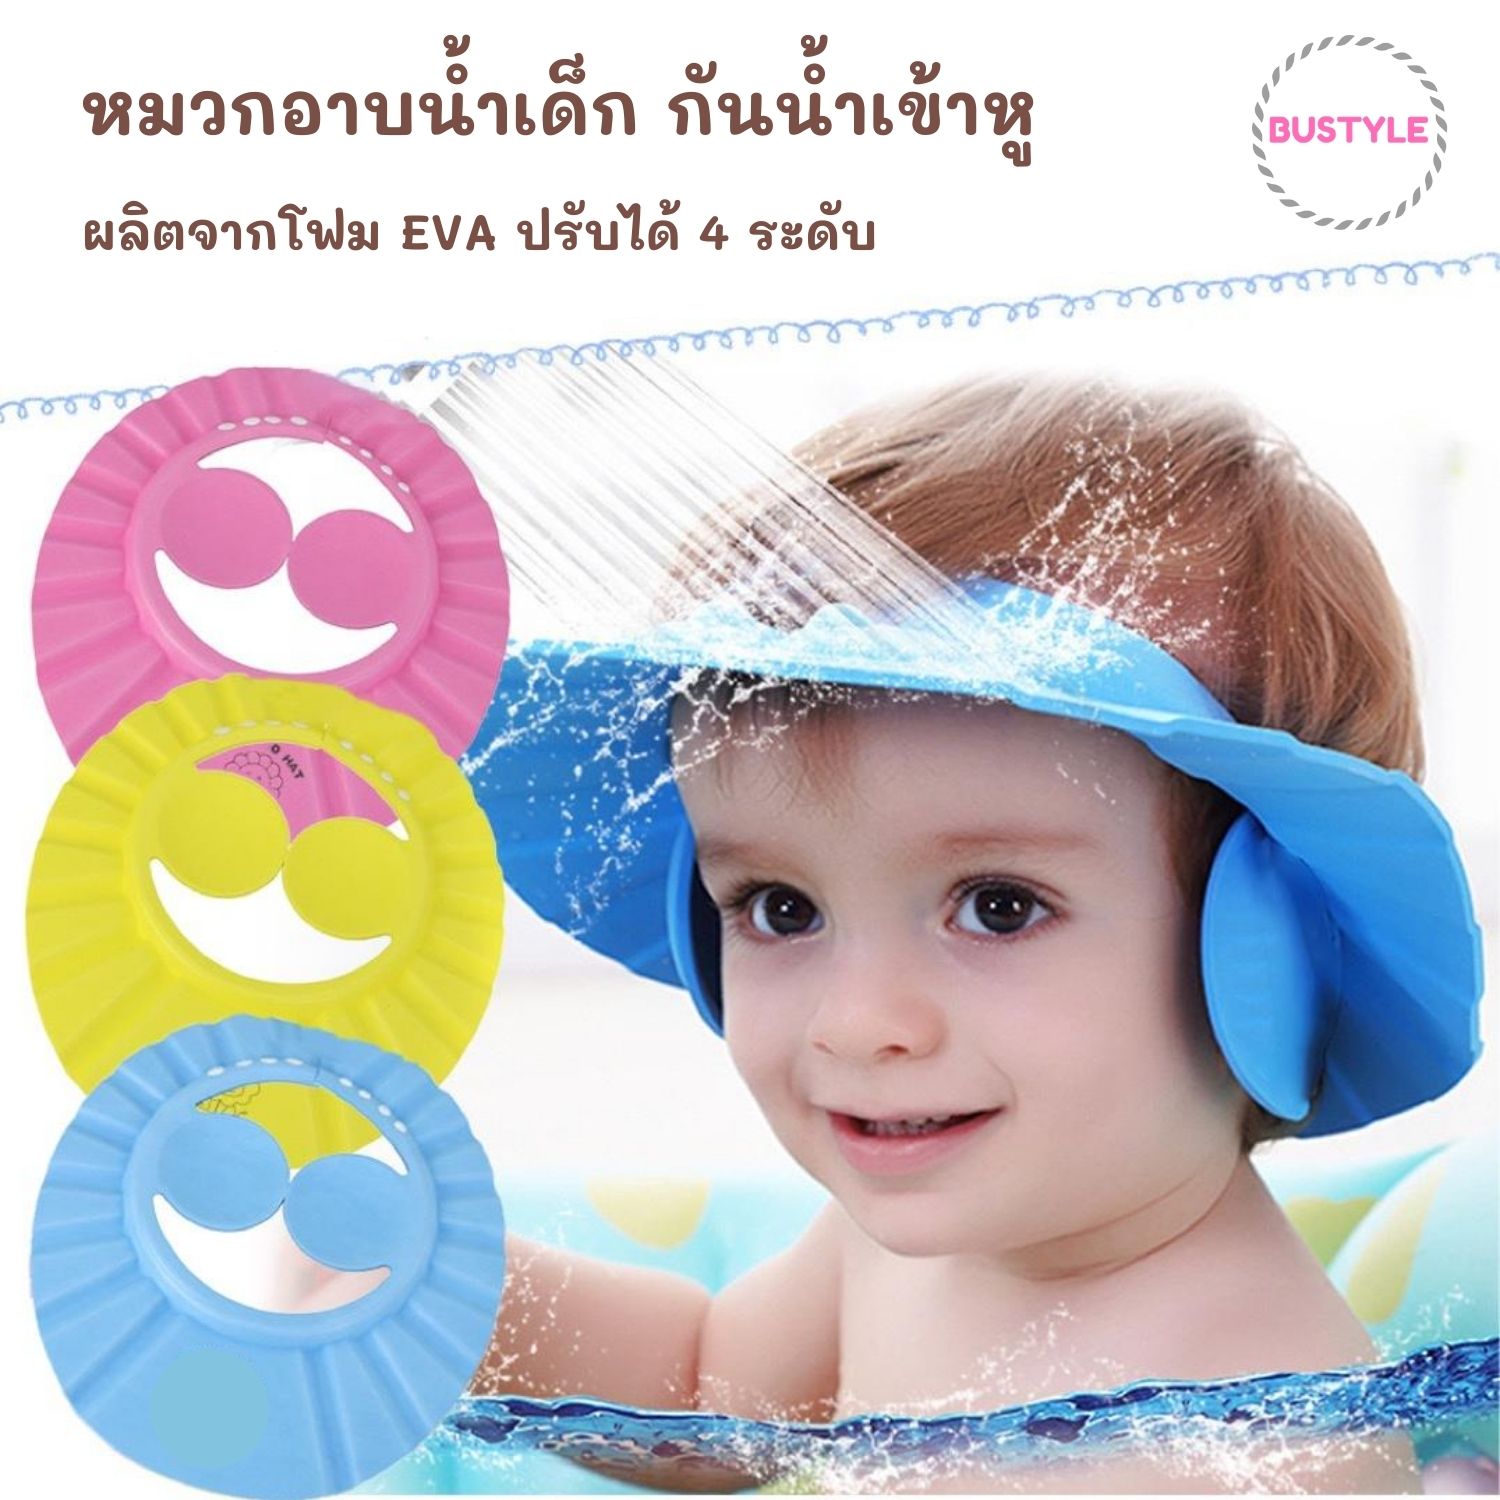 ⚡หมวกอาบน้ำเด็ก มีตัวป้องกันน้ำเข้าหู หมวกกันน้ำ และแชมพูเข้าตา หมวกสระผม ของใช้เด็กอ่อน อุปกรณ์อาบน้ำเด็ก ของใช้เด็ก baby boy girl AS026